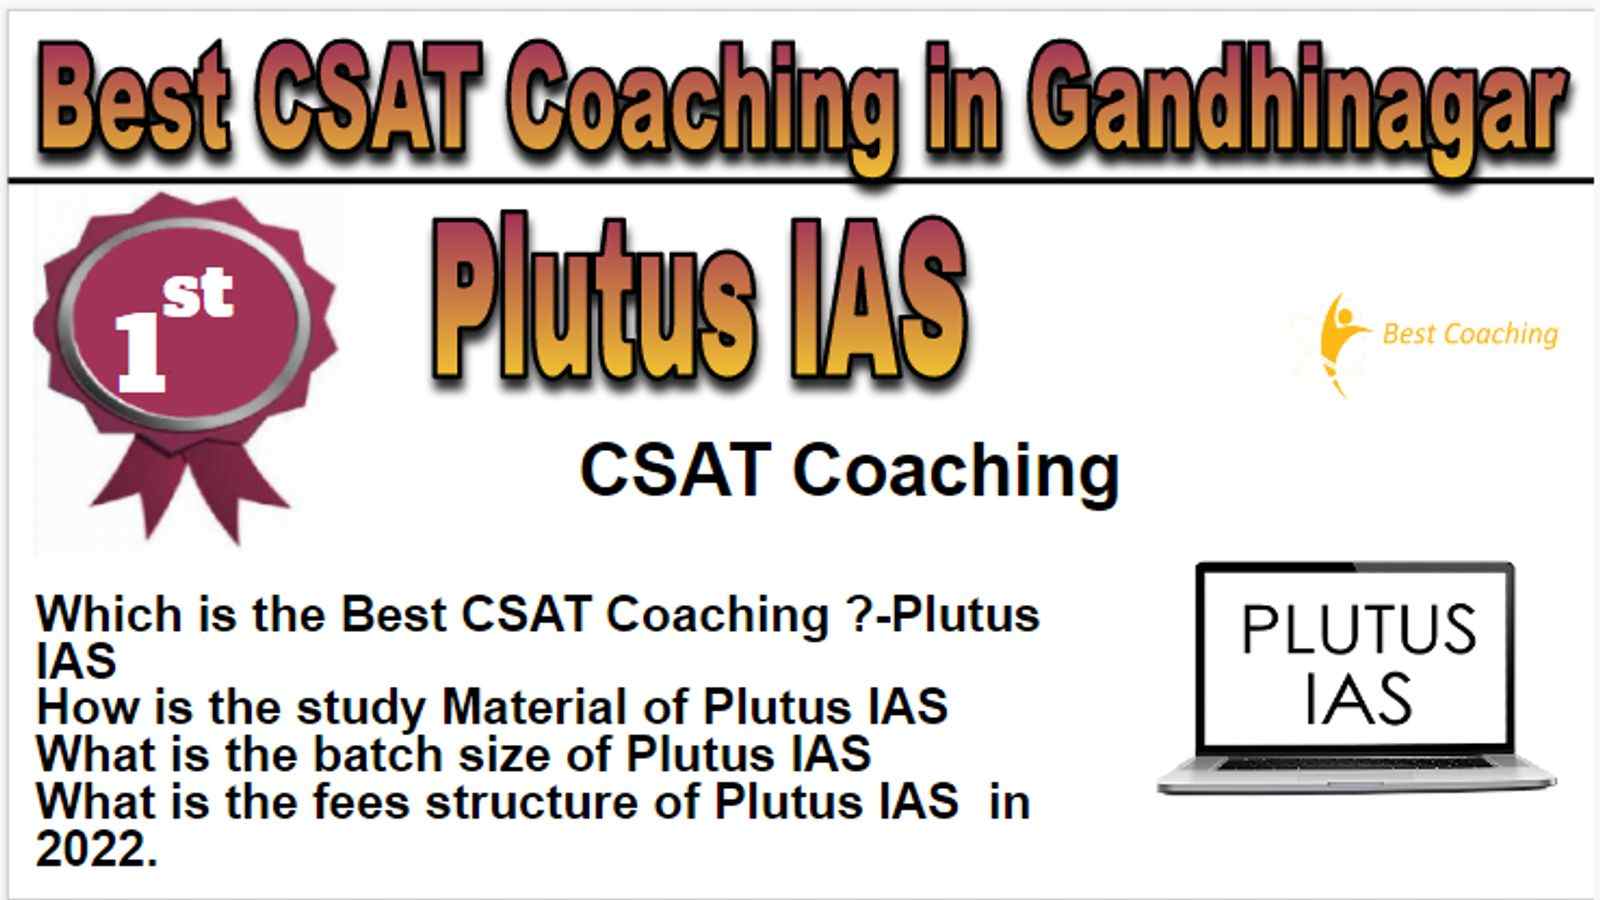 Rank 1 Best CSAT Coaching in Gandhinagar